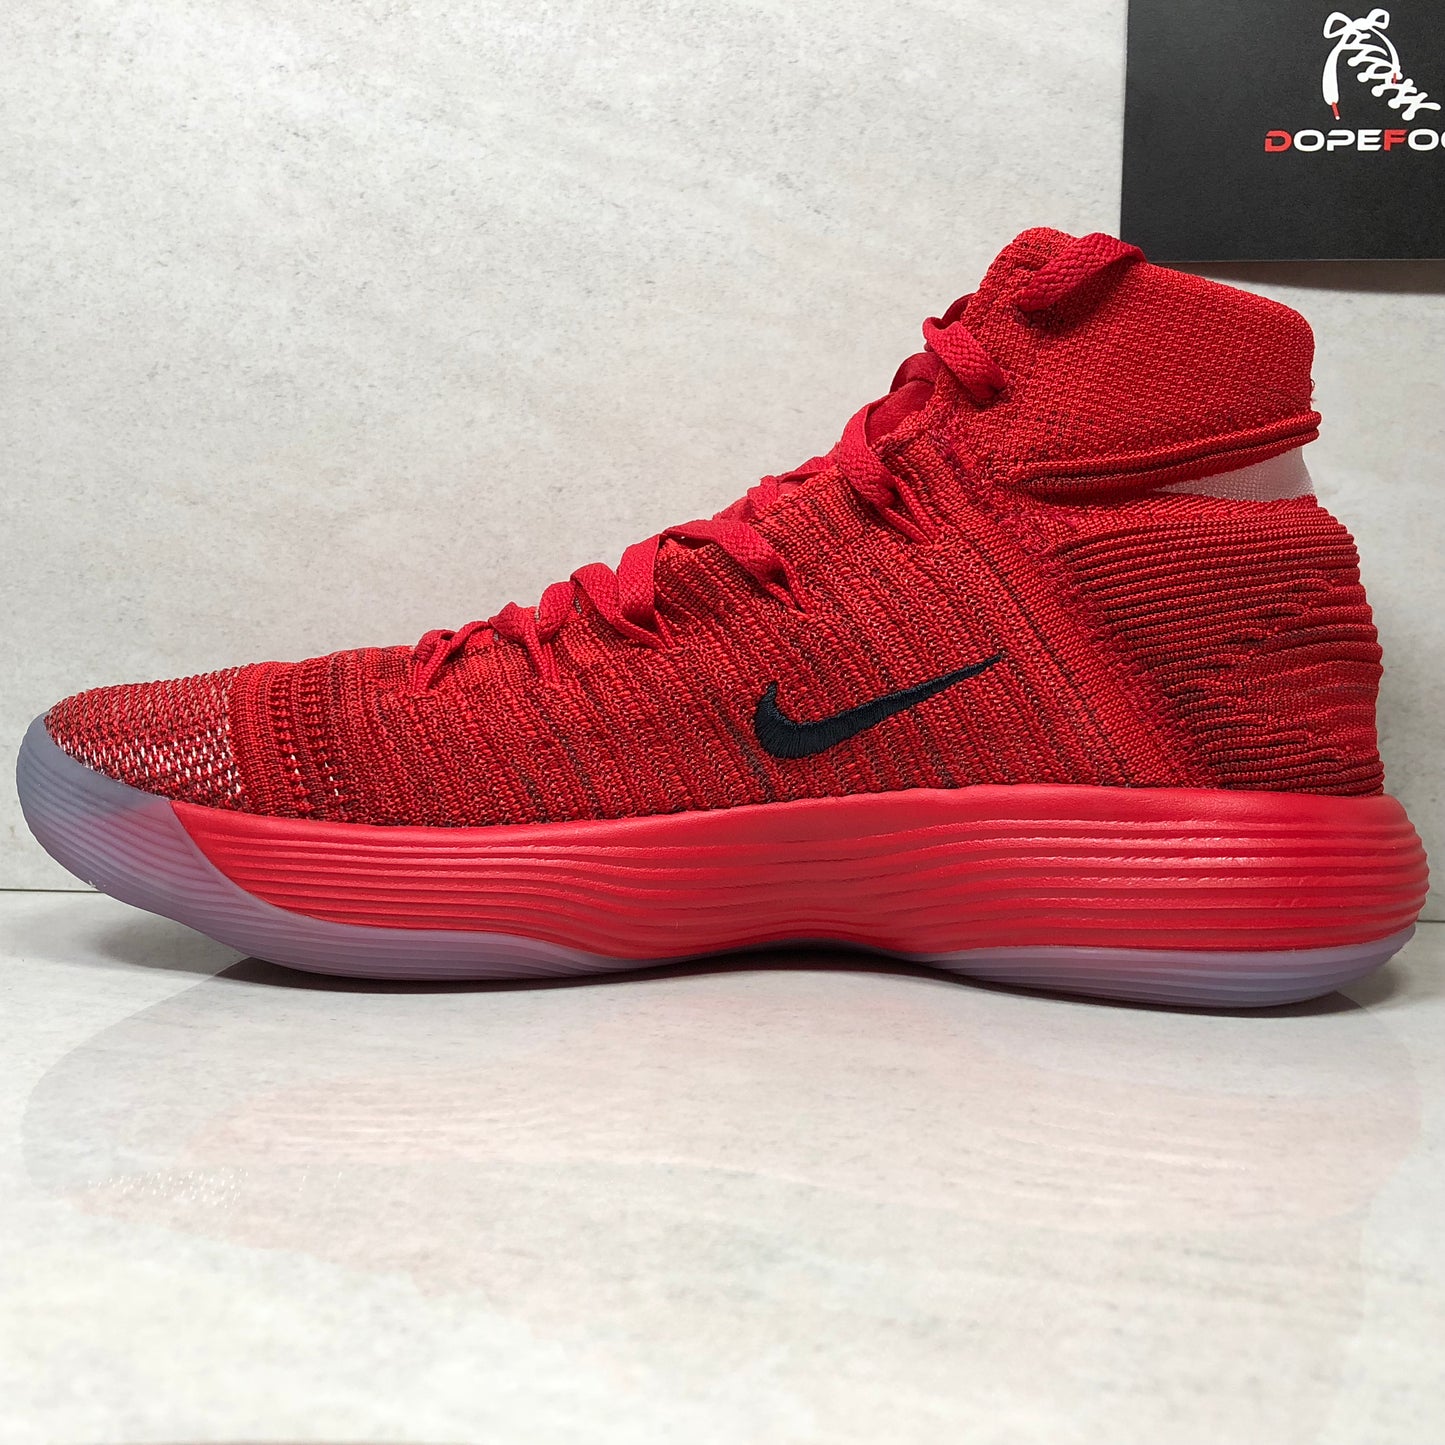 Nike Basketball Hyperdunk 2017 - 897636 600 - Talla de hombre 11 - Rojo/Negro